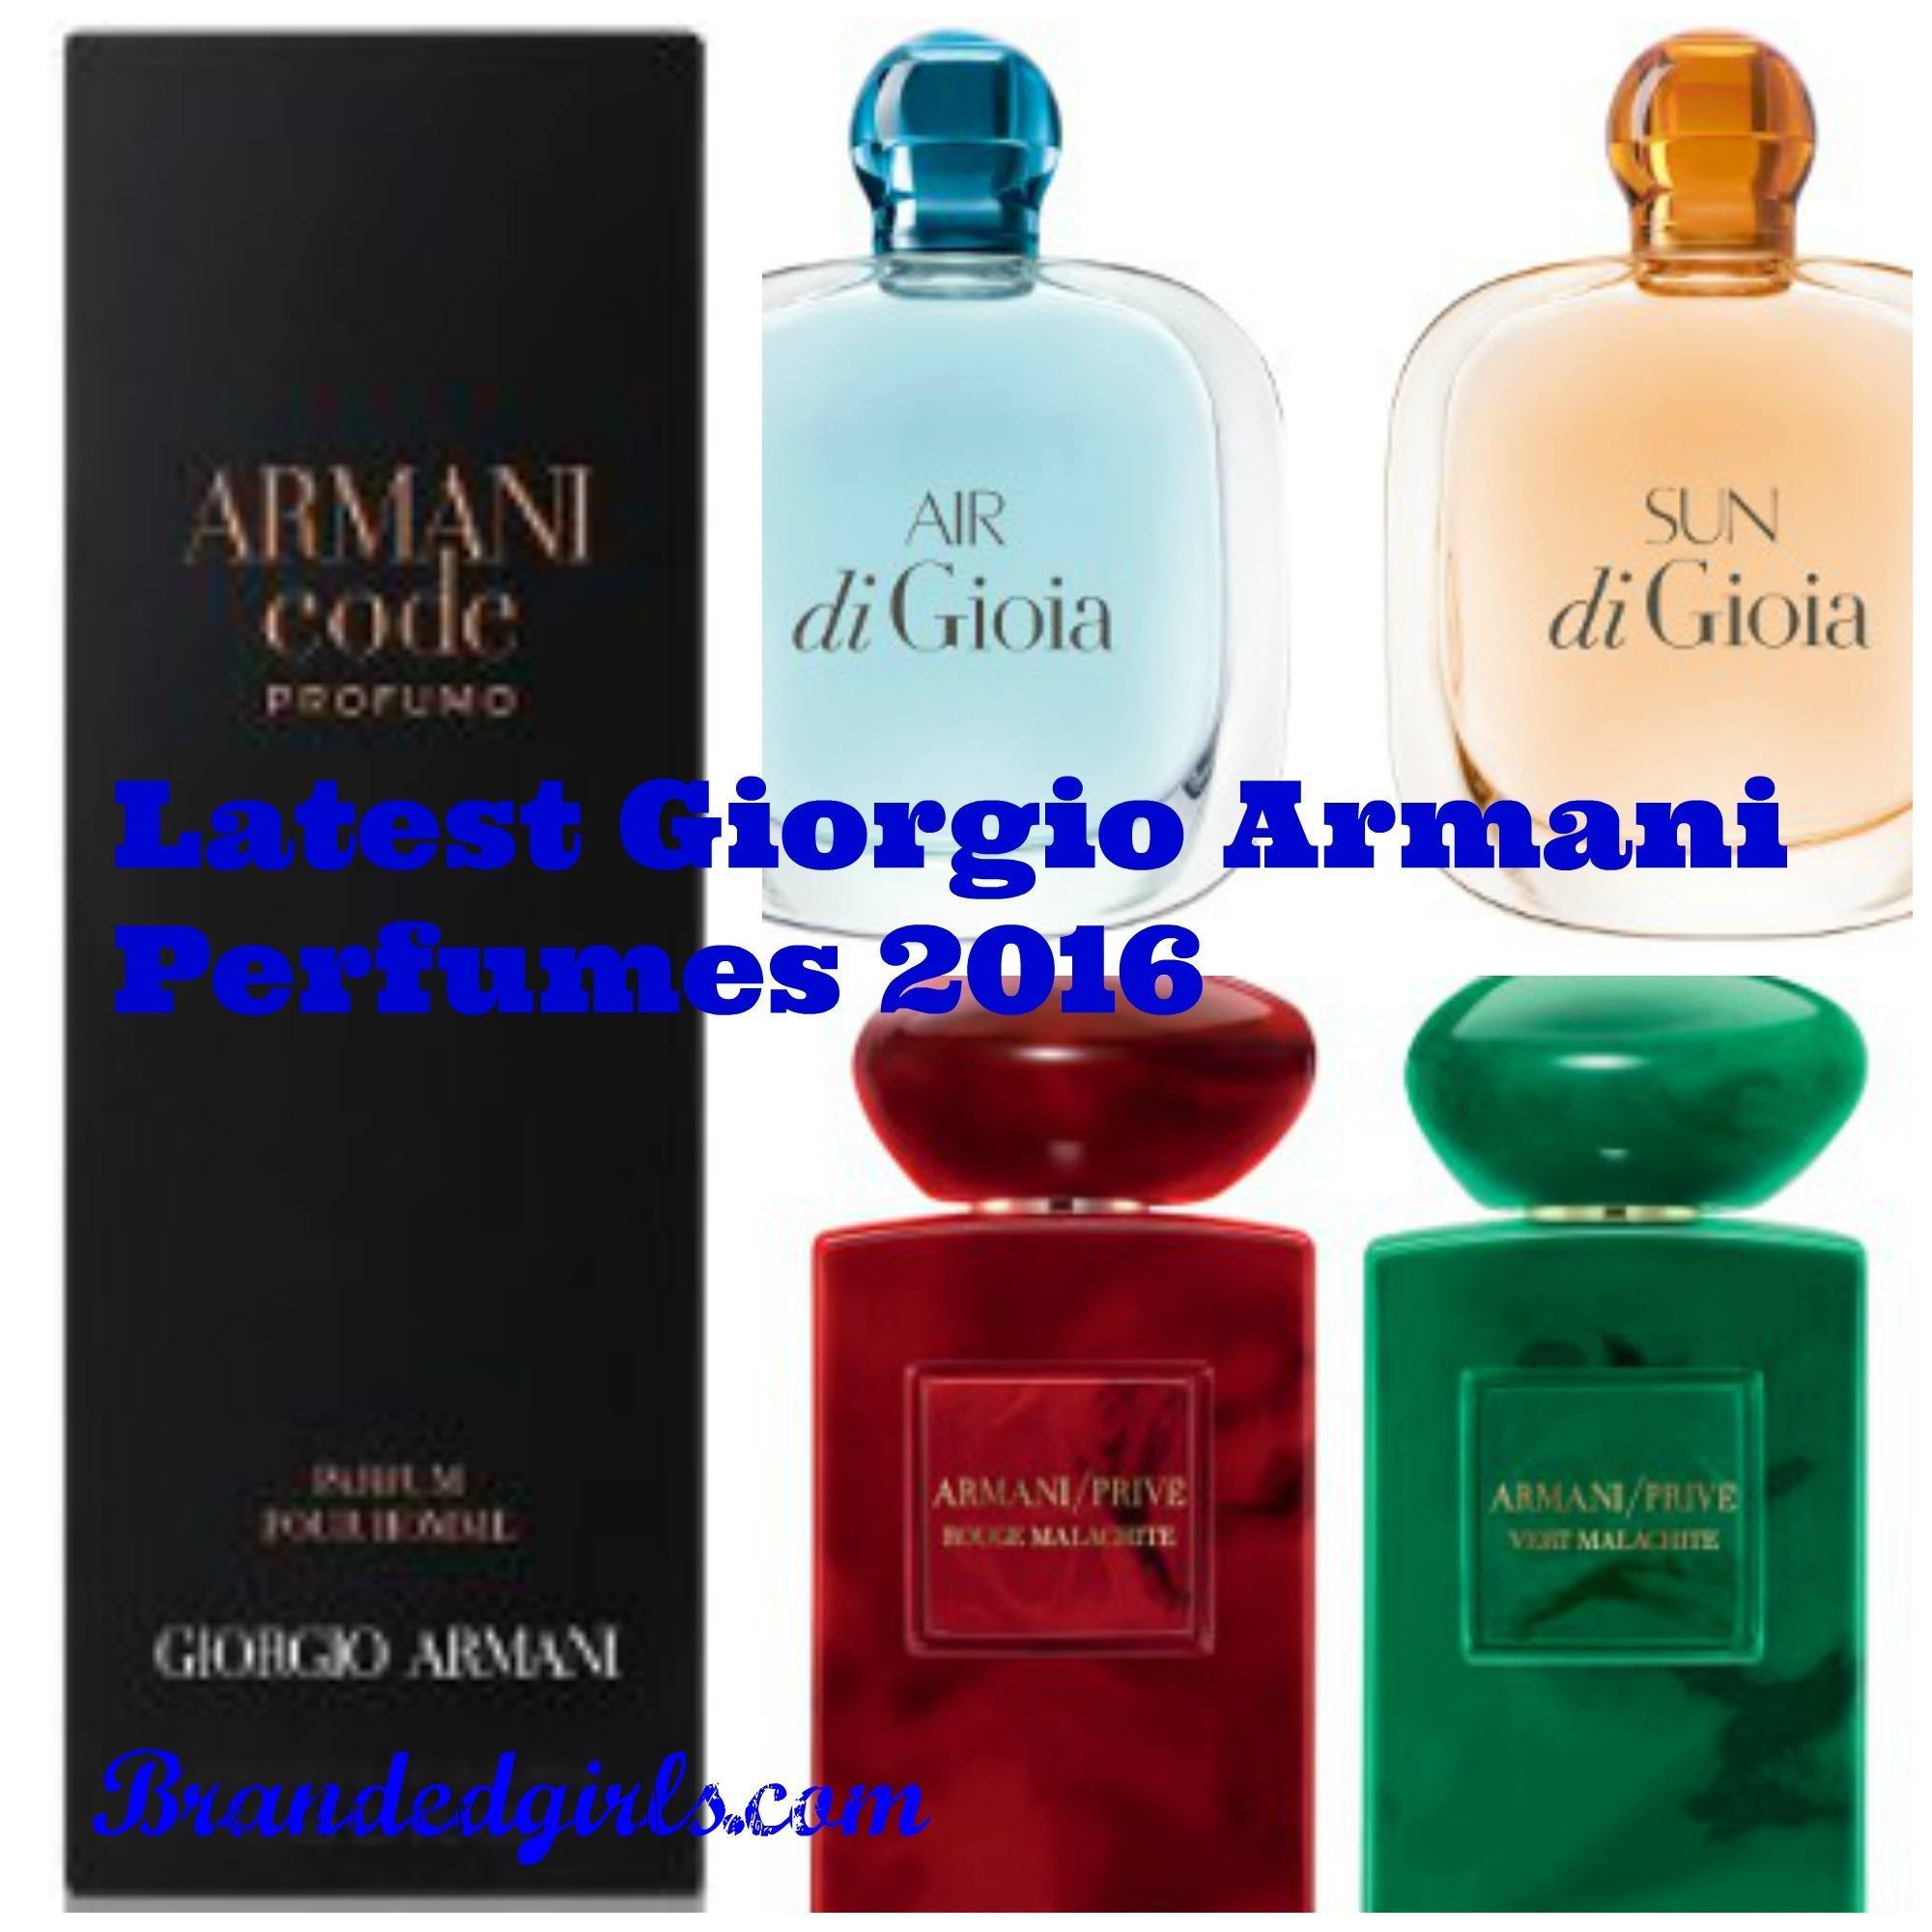 2021 Giorgio Armani Perfumes-Top Fragrances for Men/ Women 